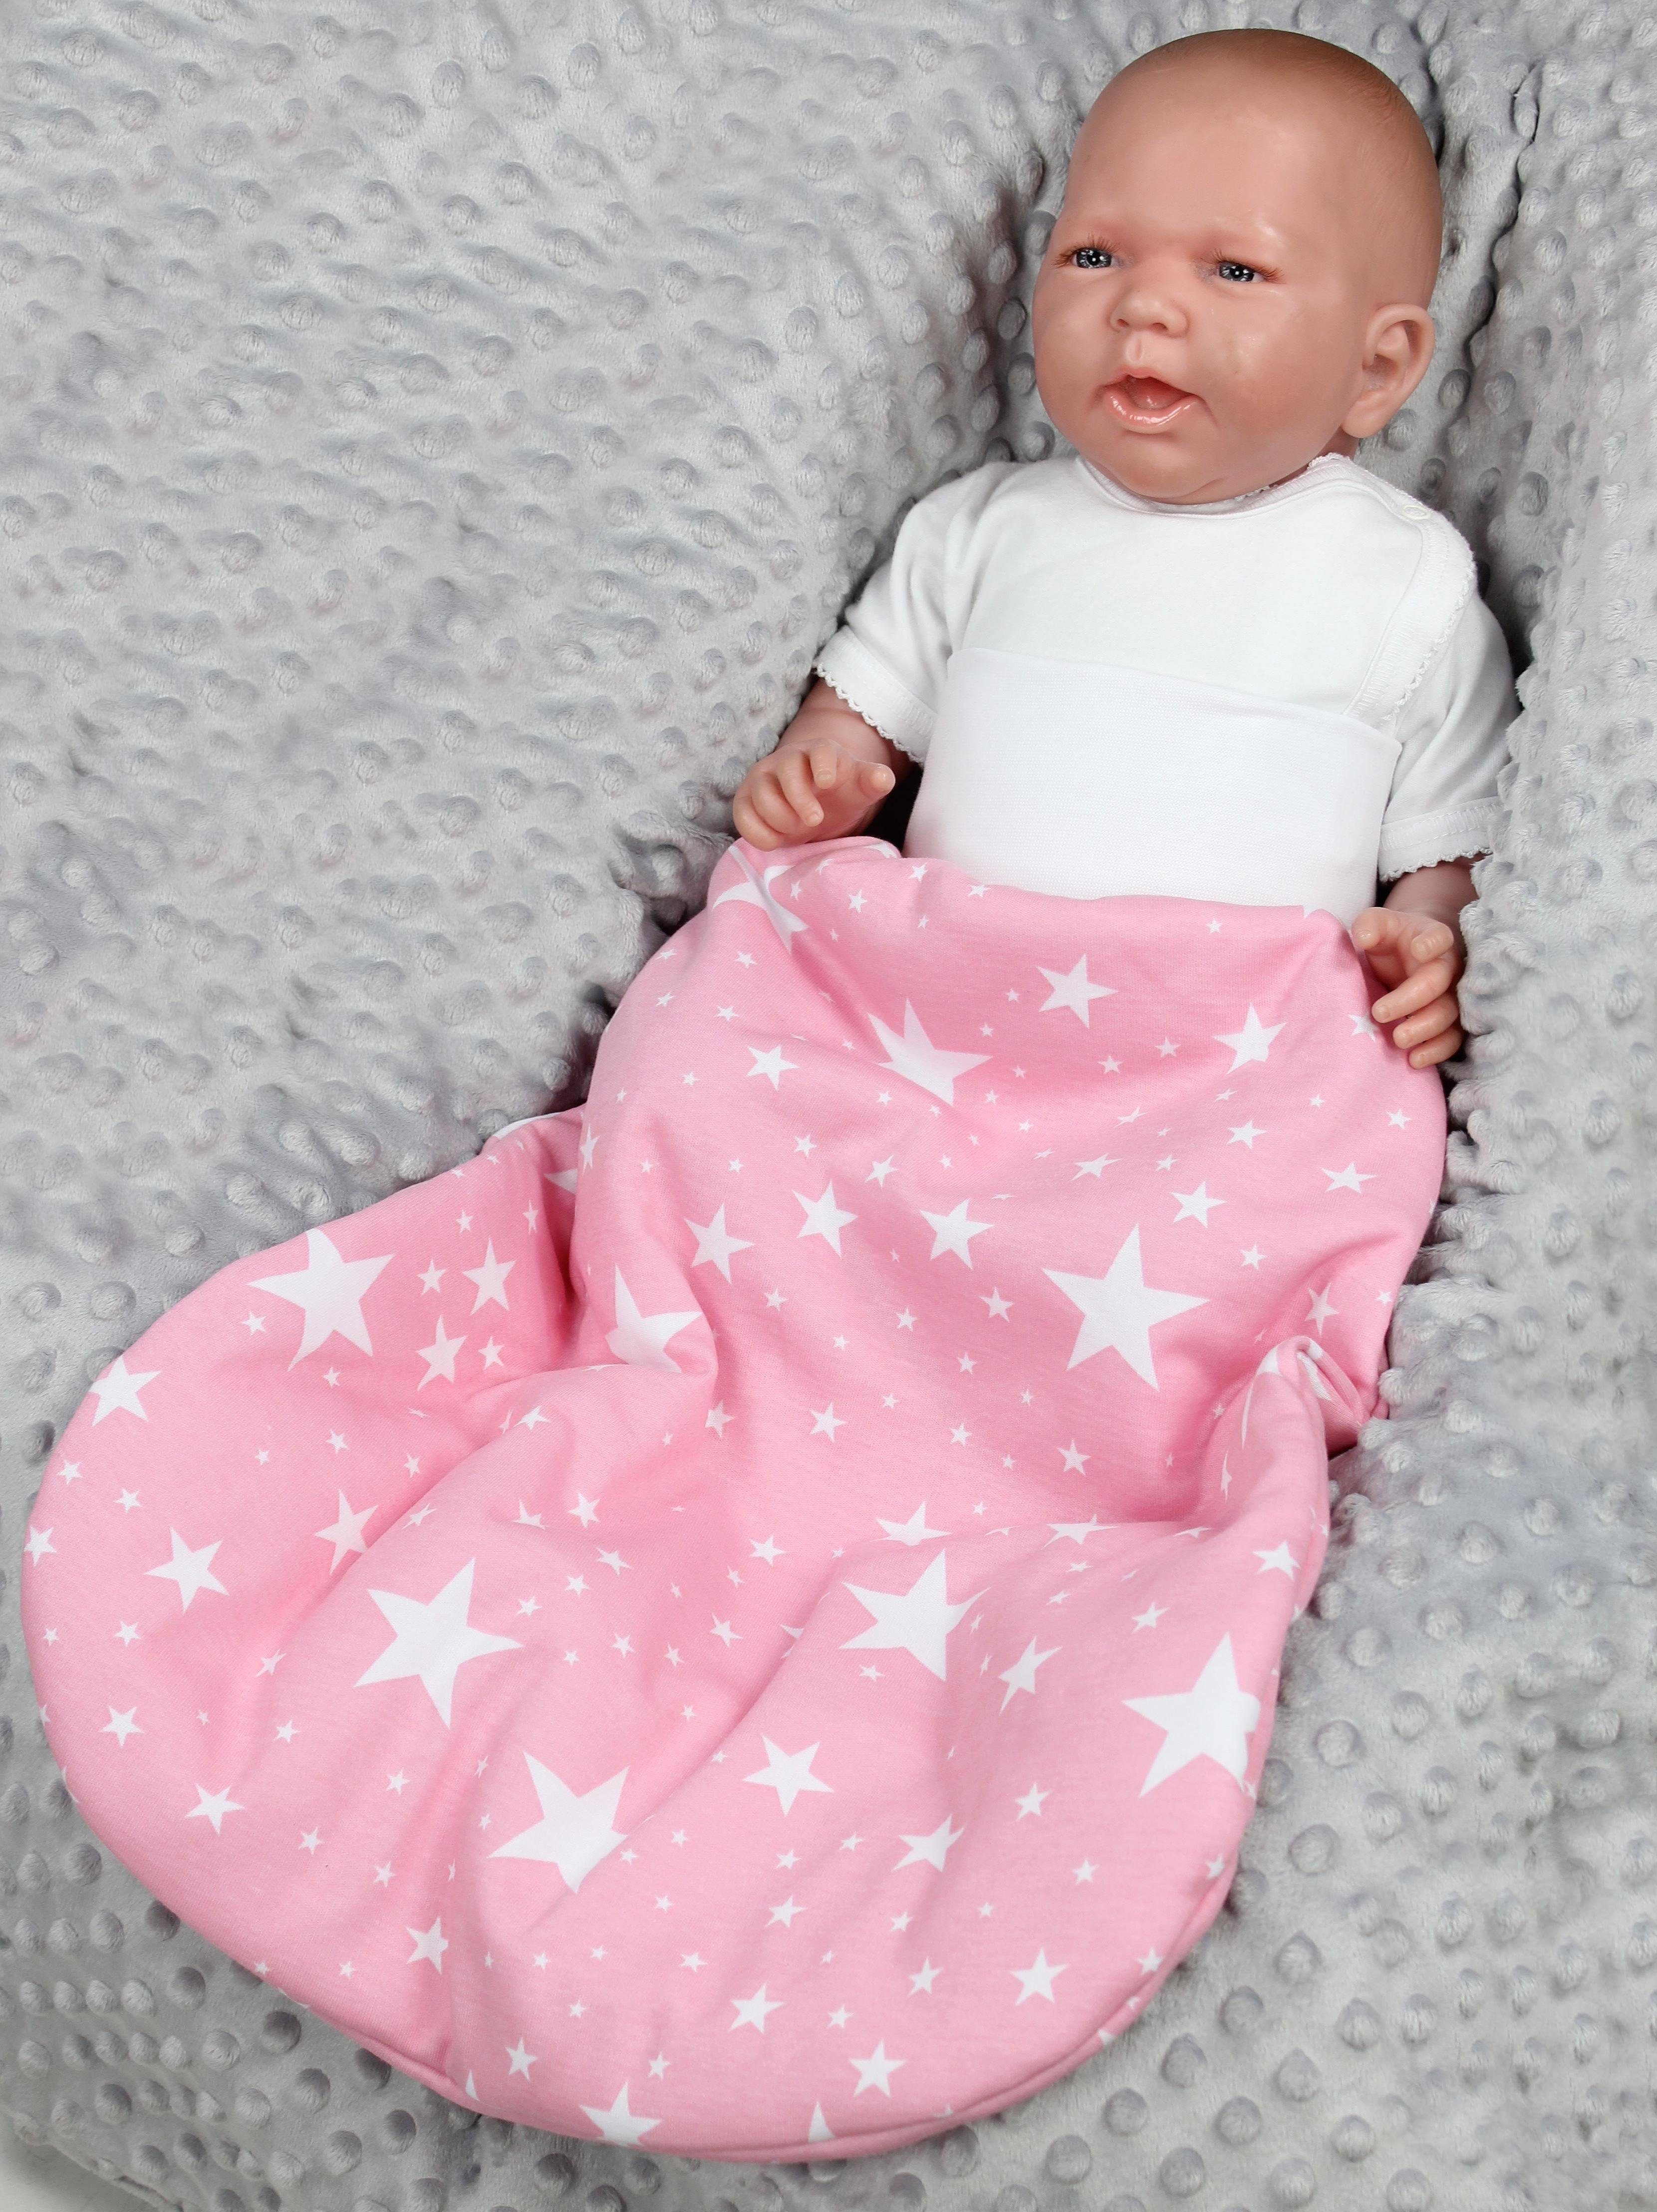 Babyschlafsack Wattiert Baby Bund breitem mit Sterne Weiße Unisex Strampelsack Rosa TupTam / TupTam